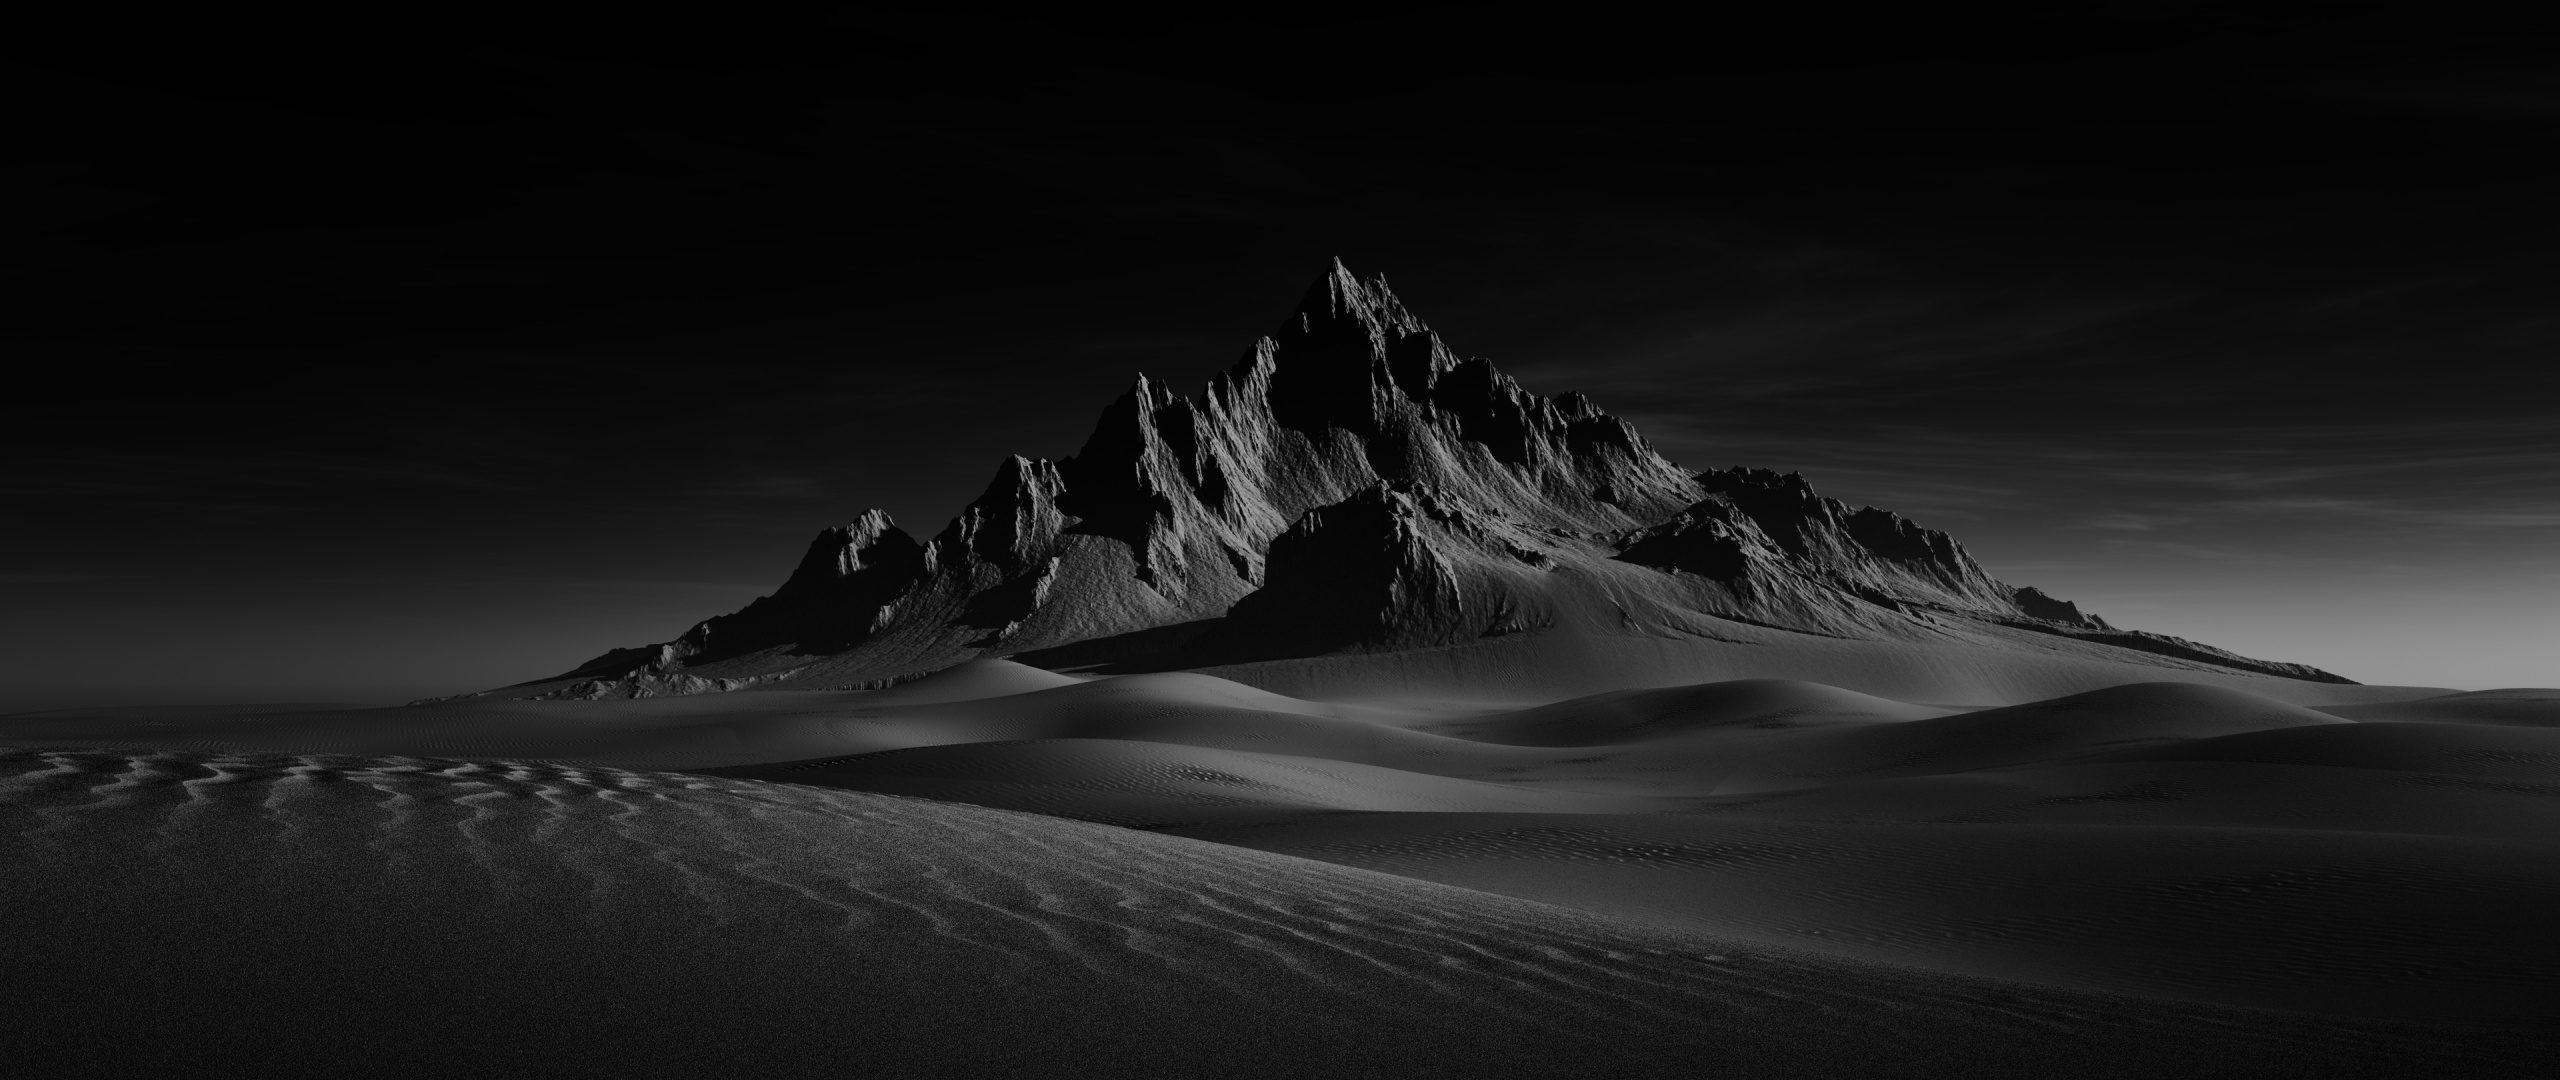 Hình nền đồi cát sa mạc 4K với hình tượng tuyệt vọng và đồng cỏ mênh mang mang đến cho bạn cảm giác thật hoang sơ và thành thị. Đây là một trong những hình nền đen đẹp nhất, giúp cho chuyện trang trí desktop dễ dàng hơn bao giờ hết.